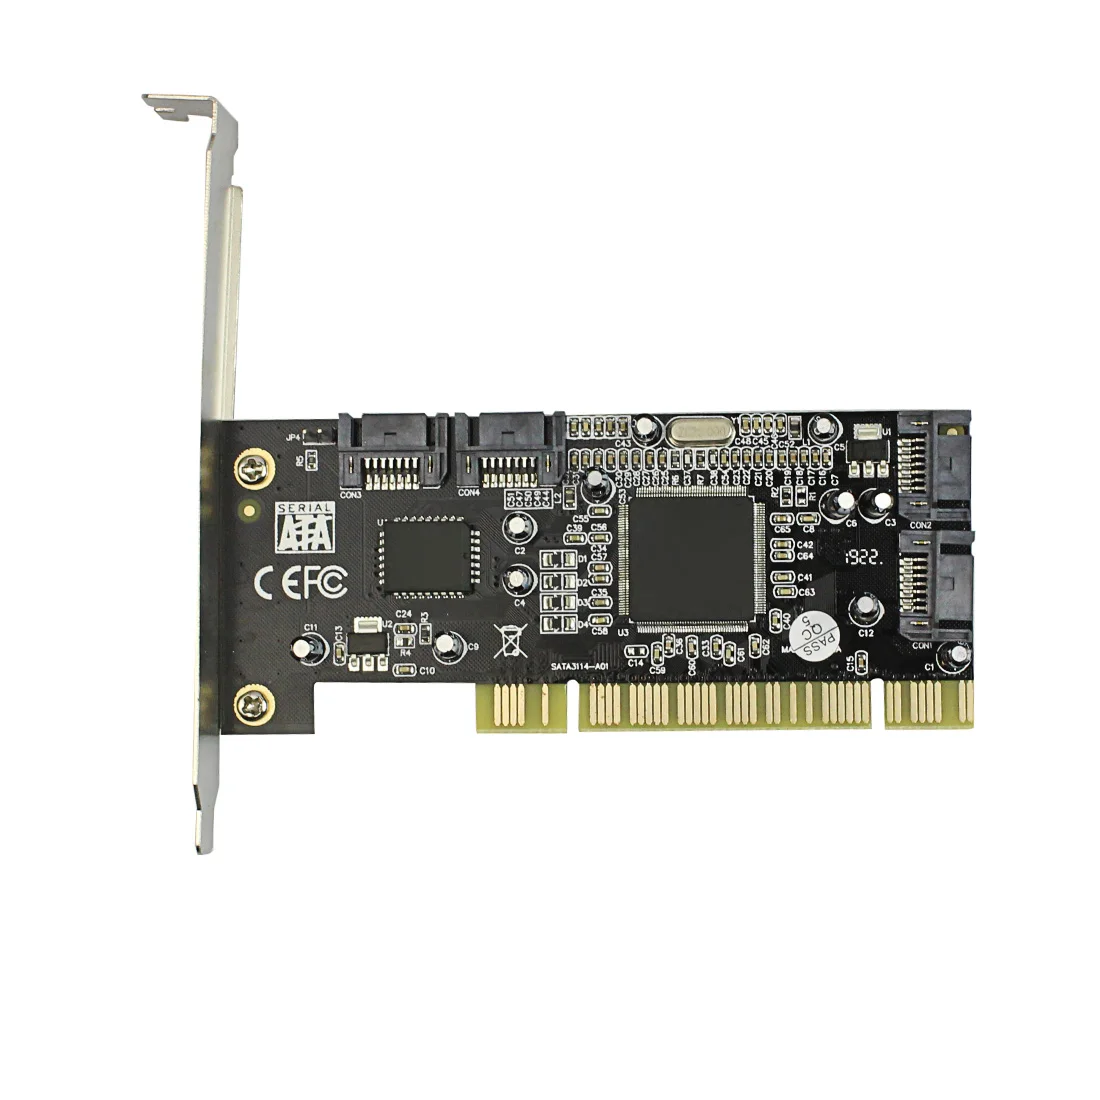 Компьютер PCI Add on Card 4 порта SATA для Sil 3114 чипсет RAID 1,5 Гбит/с плата контроллера расширения для PCI Стандартный 2,3 настольный компьютер